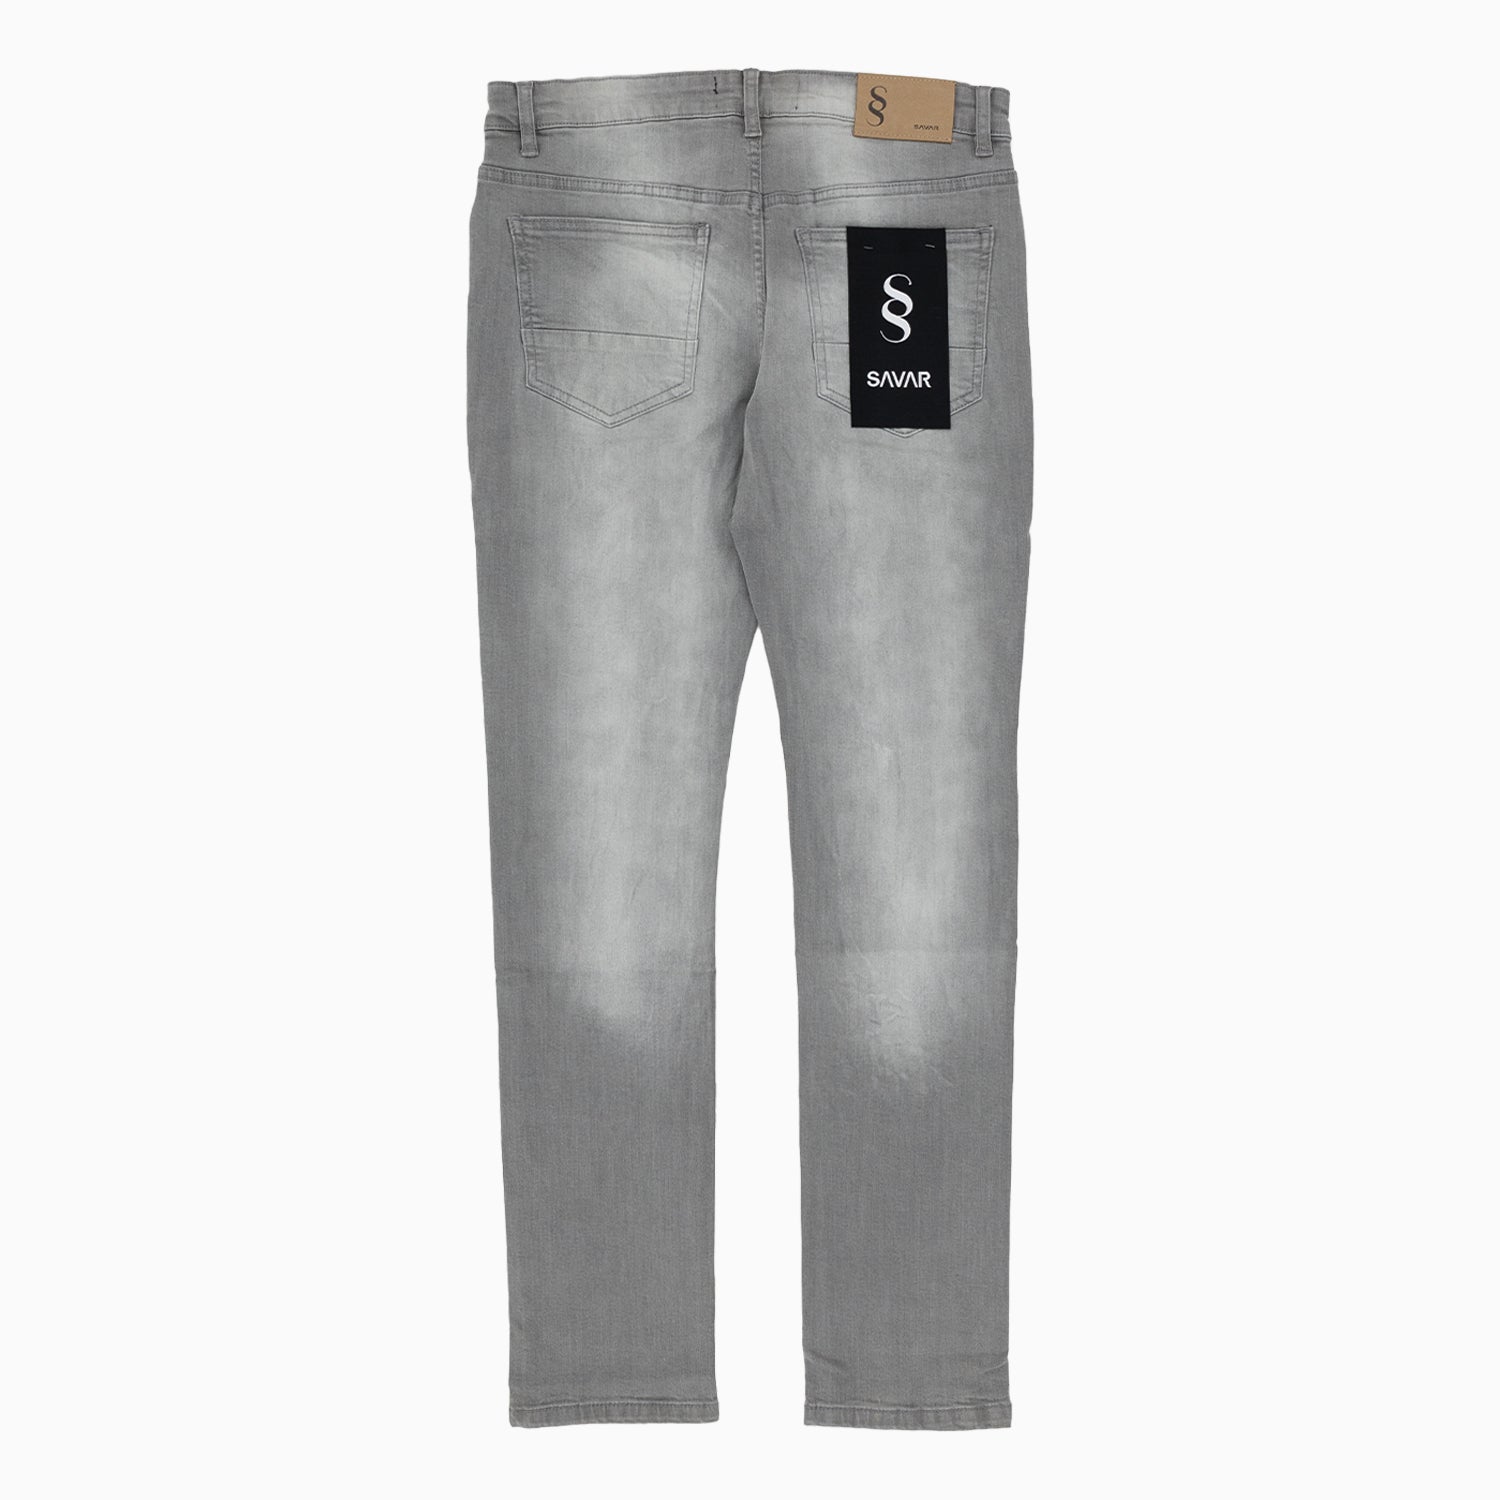 mens-savar-light-grey-slim-denim-jeans-pant-sjr0240-grey